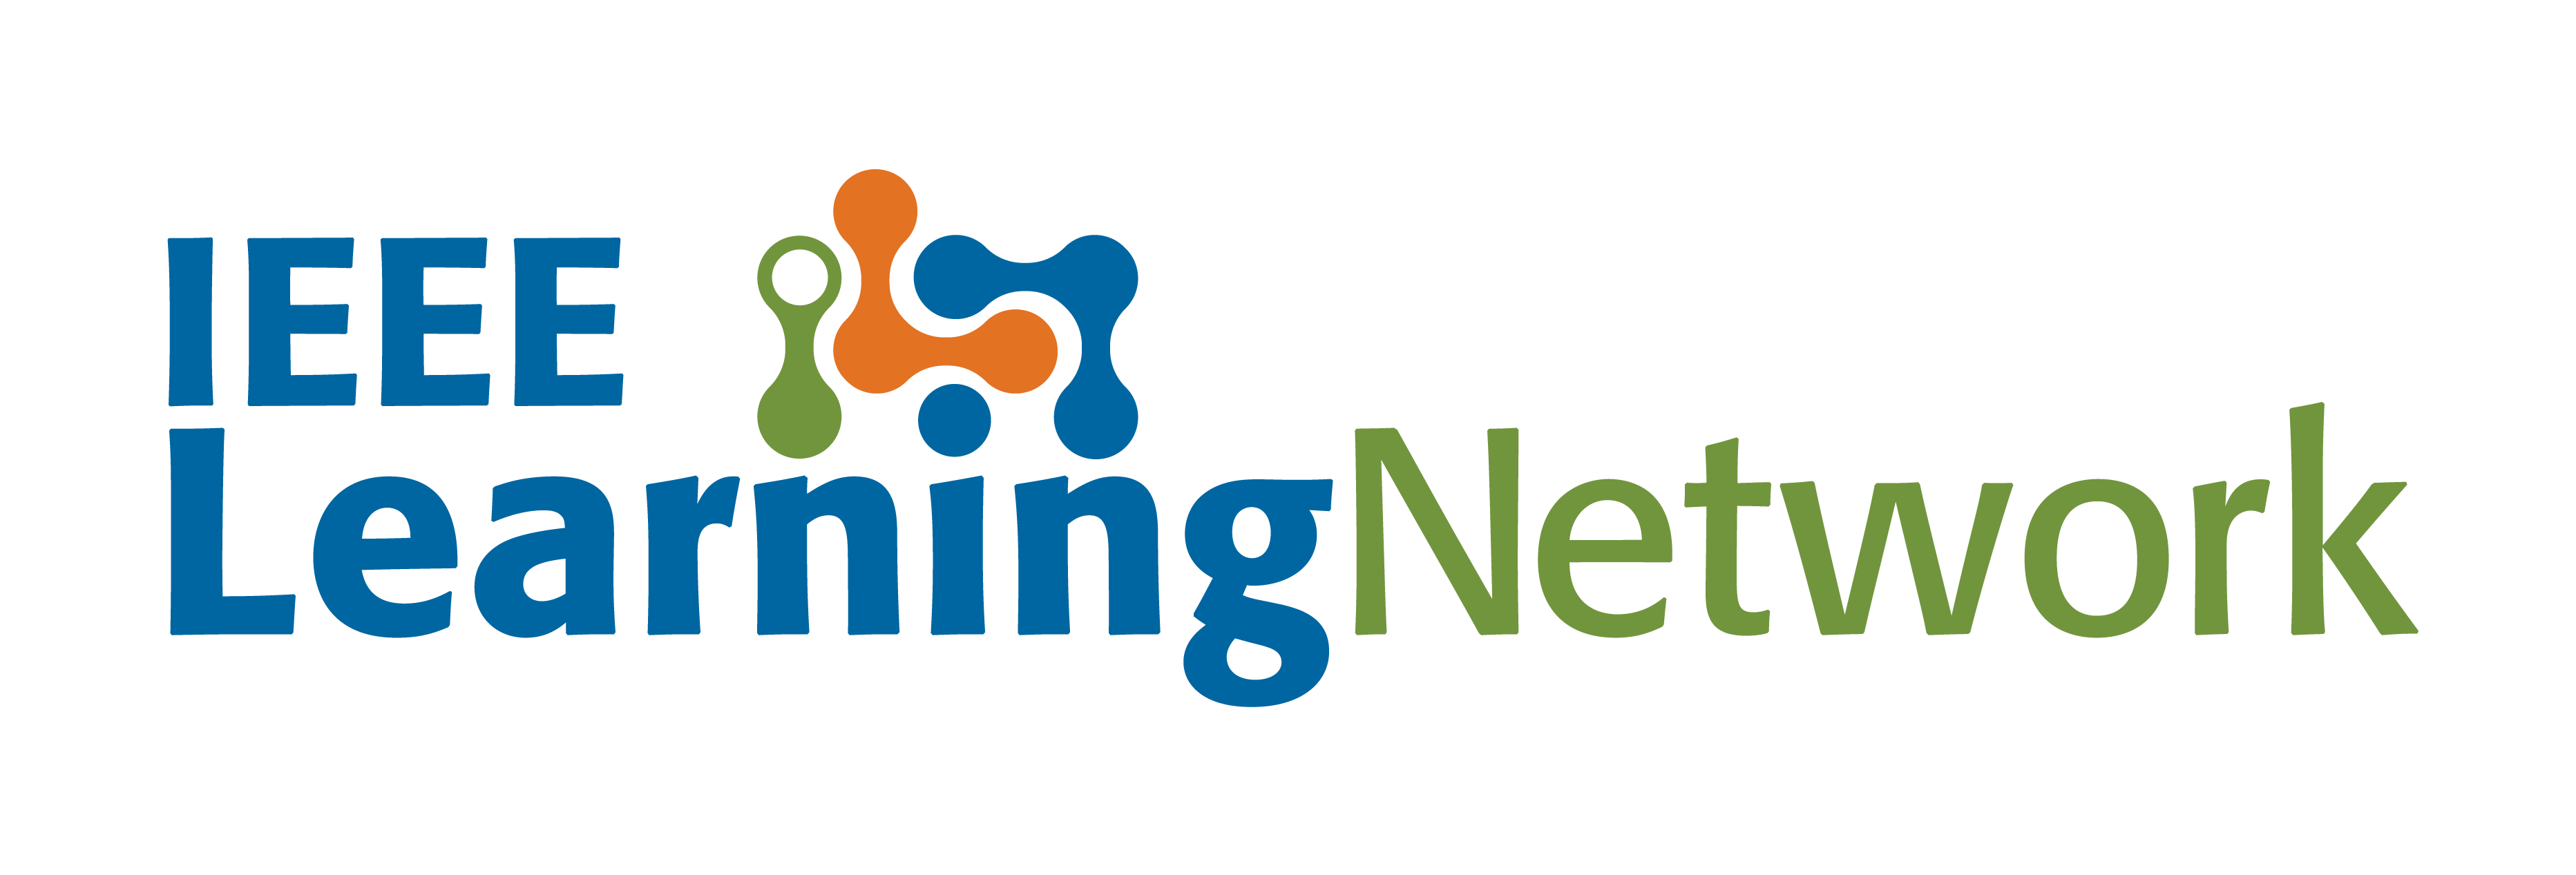 IEEE Learning Network logo